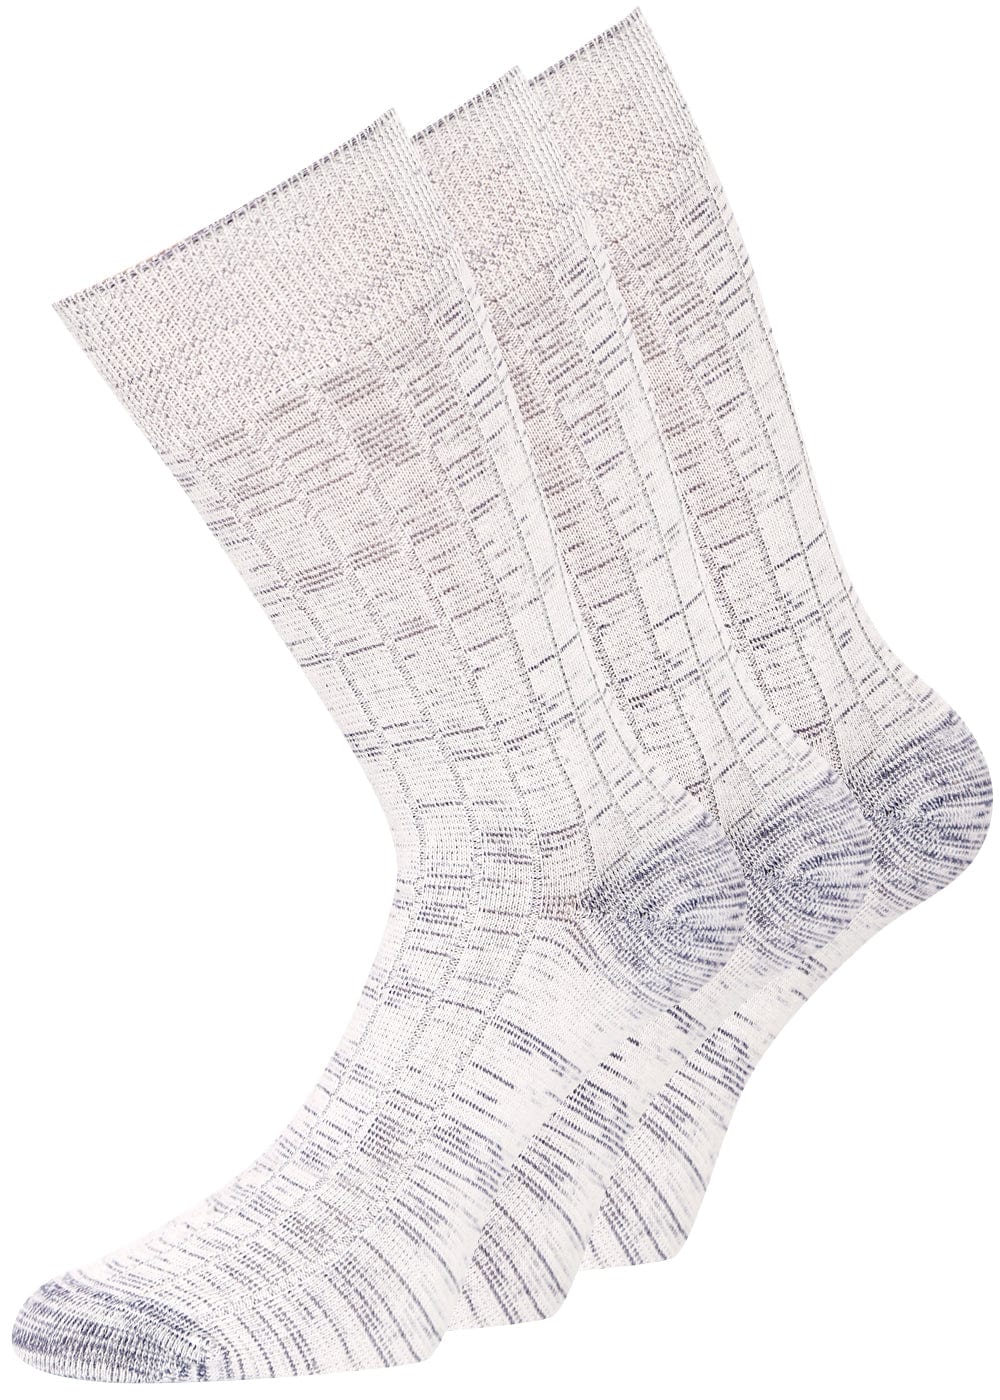 Jeanssocken Graumeliert KB – - Paar 5 Socken